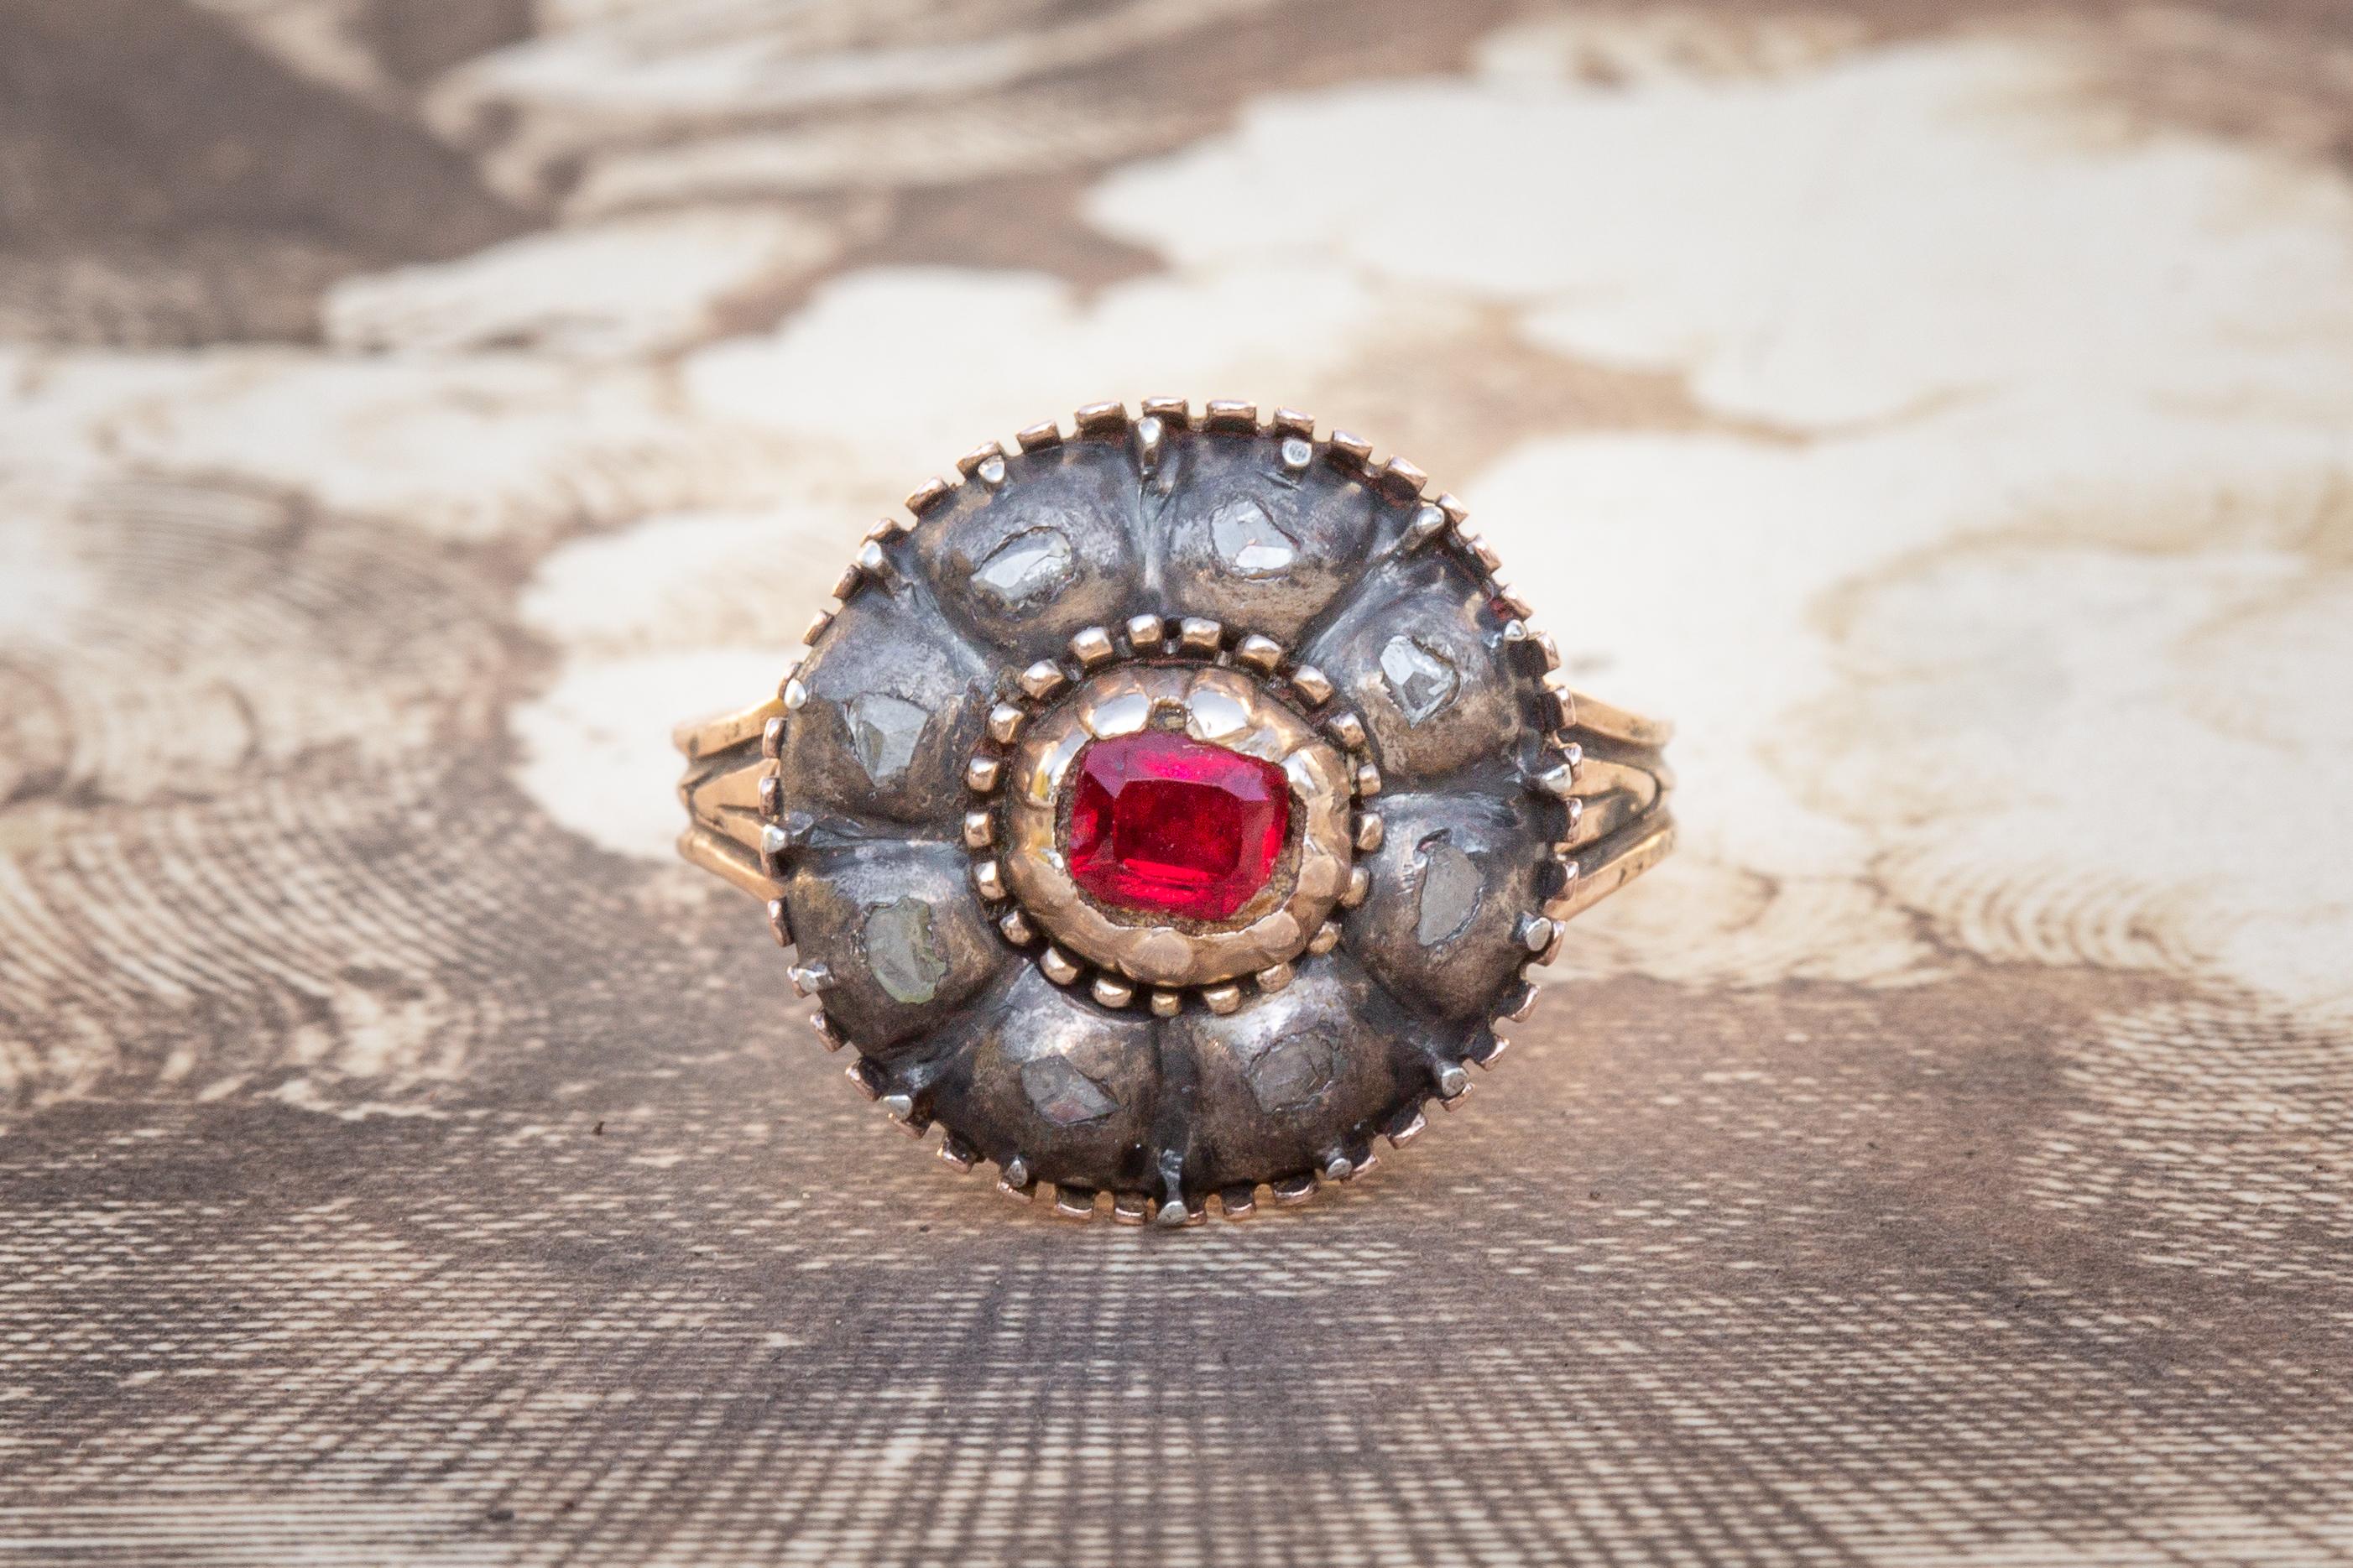 Cette belle bague italienne ancienne datant d'environ 1800 est sertie d'un grenat et de diamants. Au centre de la tête de l'anneau se trouve un grenat rouge vif, entouré d'une grappe de 8 diamants plats de taille rose dans une monture en argent. Le